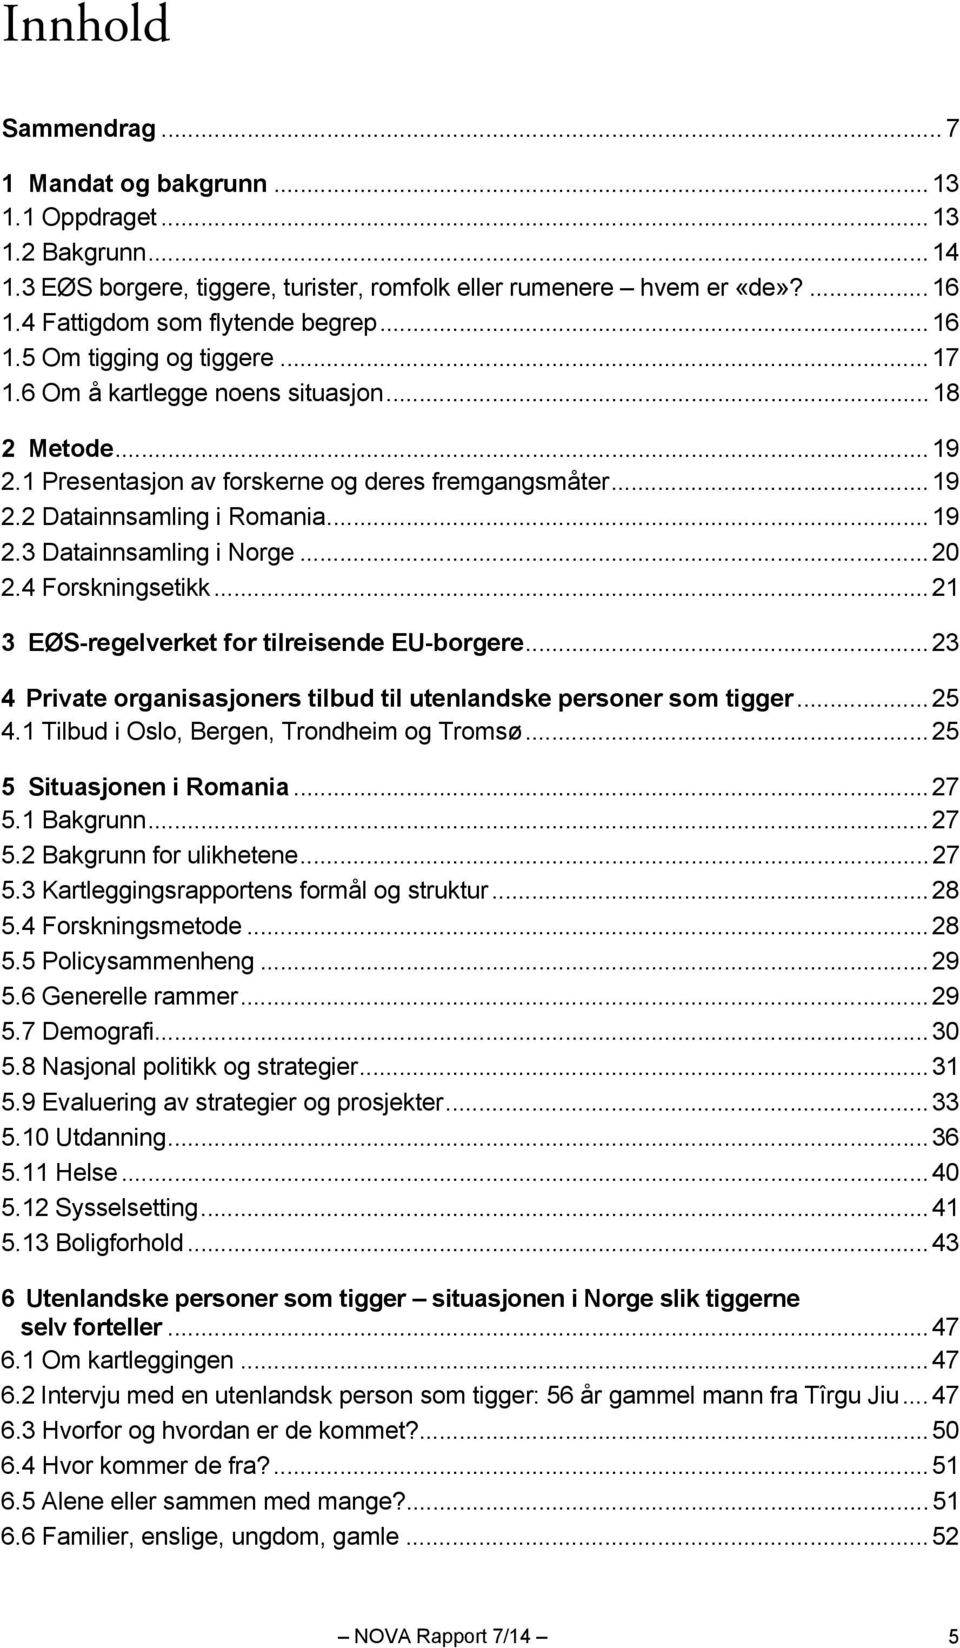 .. 19 2.3 Datainnsamling i Norge... 20 2.4 Forskningsetikk... 21 3 EØS-regelverket for tilreisende EU-borgere... 23 4 Private organisasjoners tilbud til utenlandske personer som tigger... 25 4.